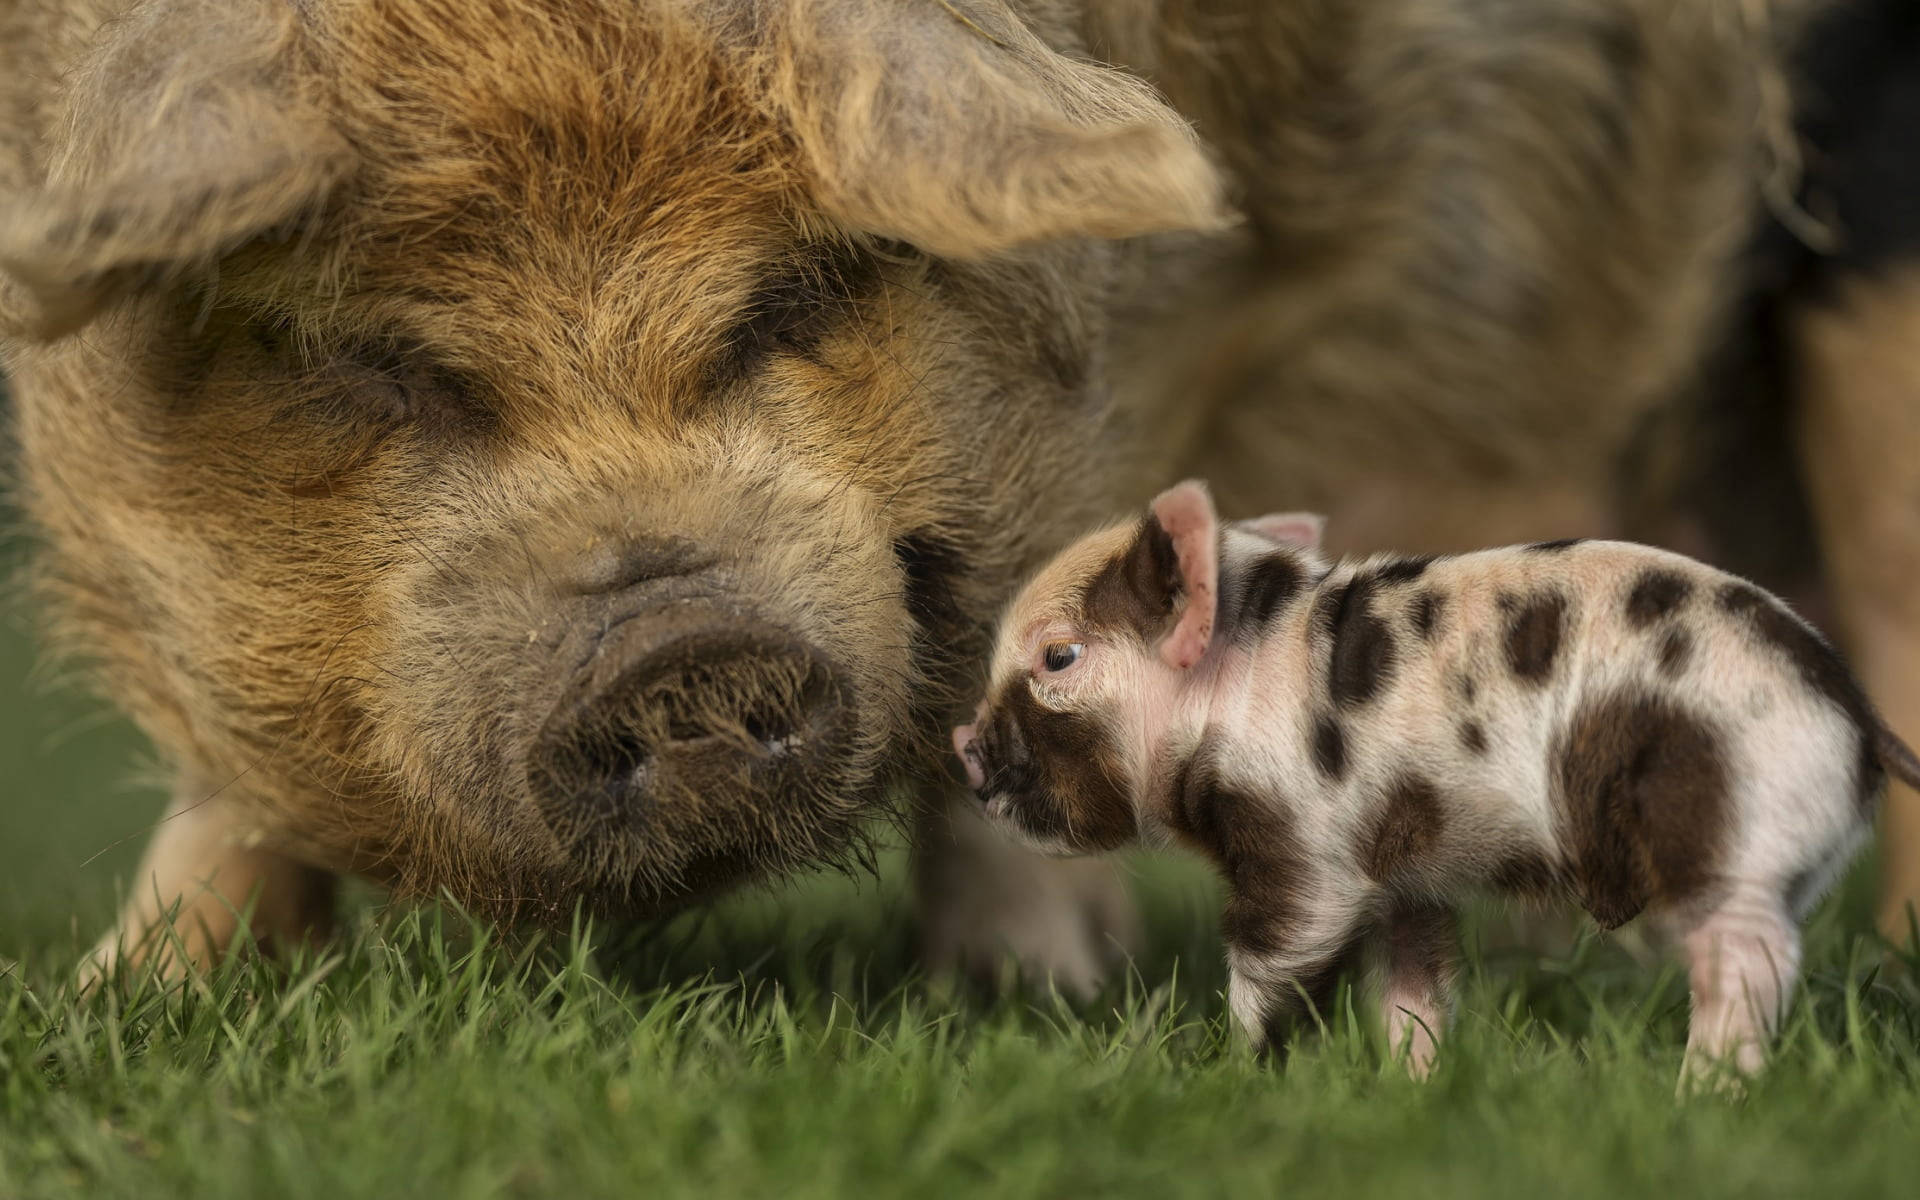 Mini Pig Animals On A Farm Field Wallpaper